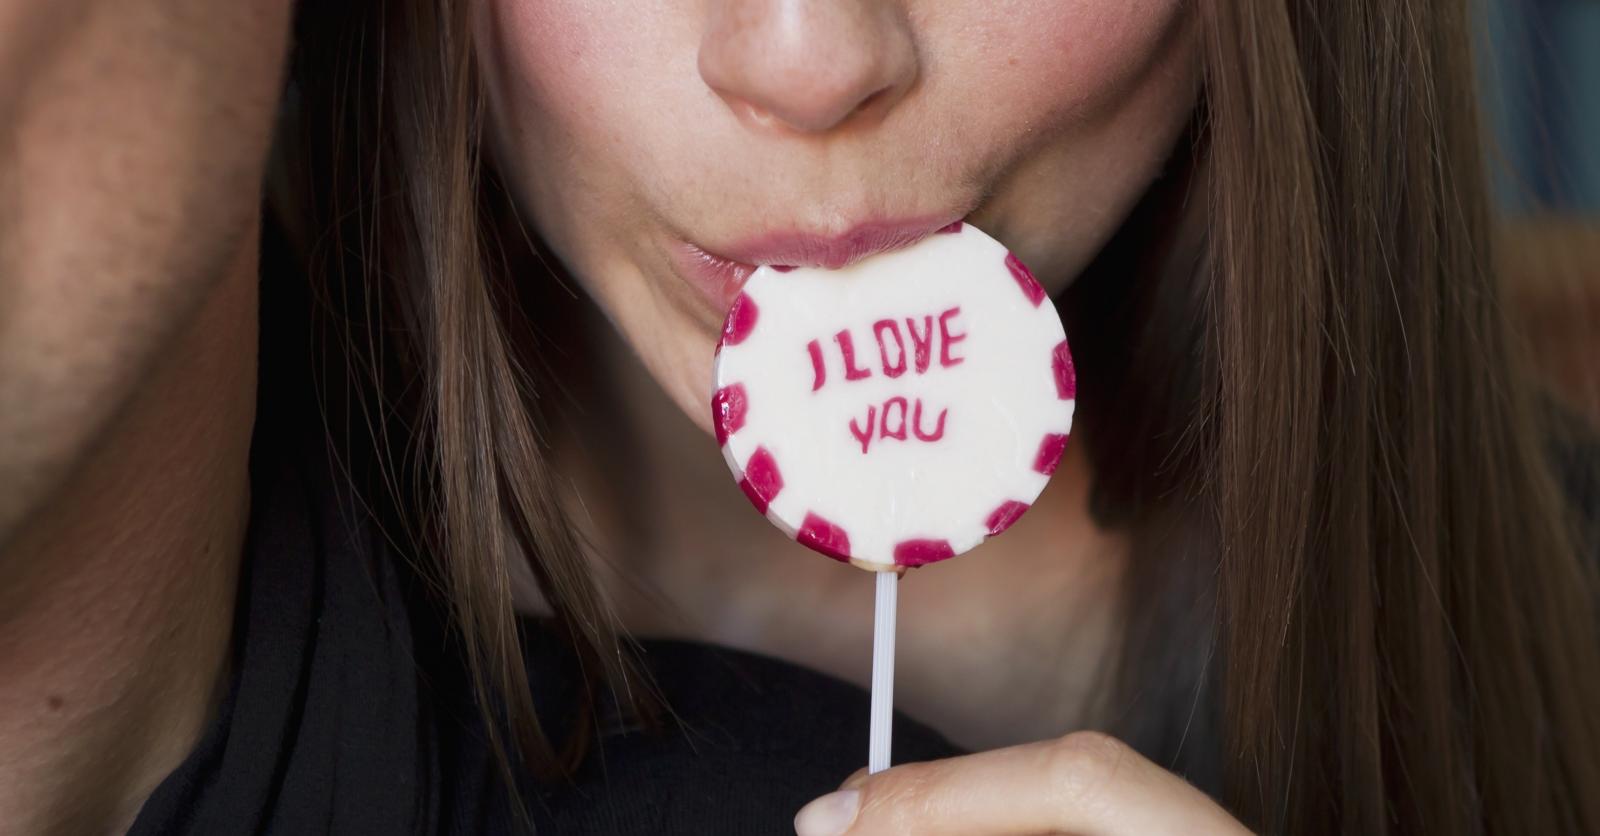 Les bonbons : pourquoi tant d'amour ?